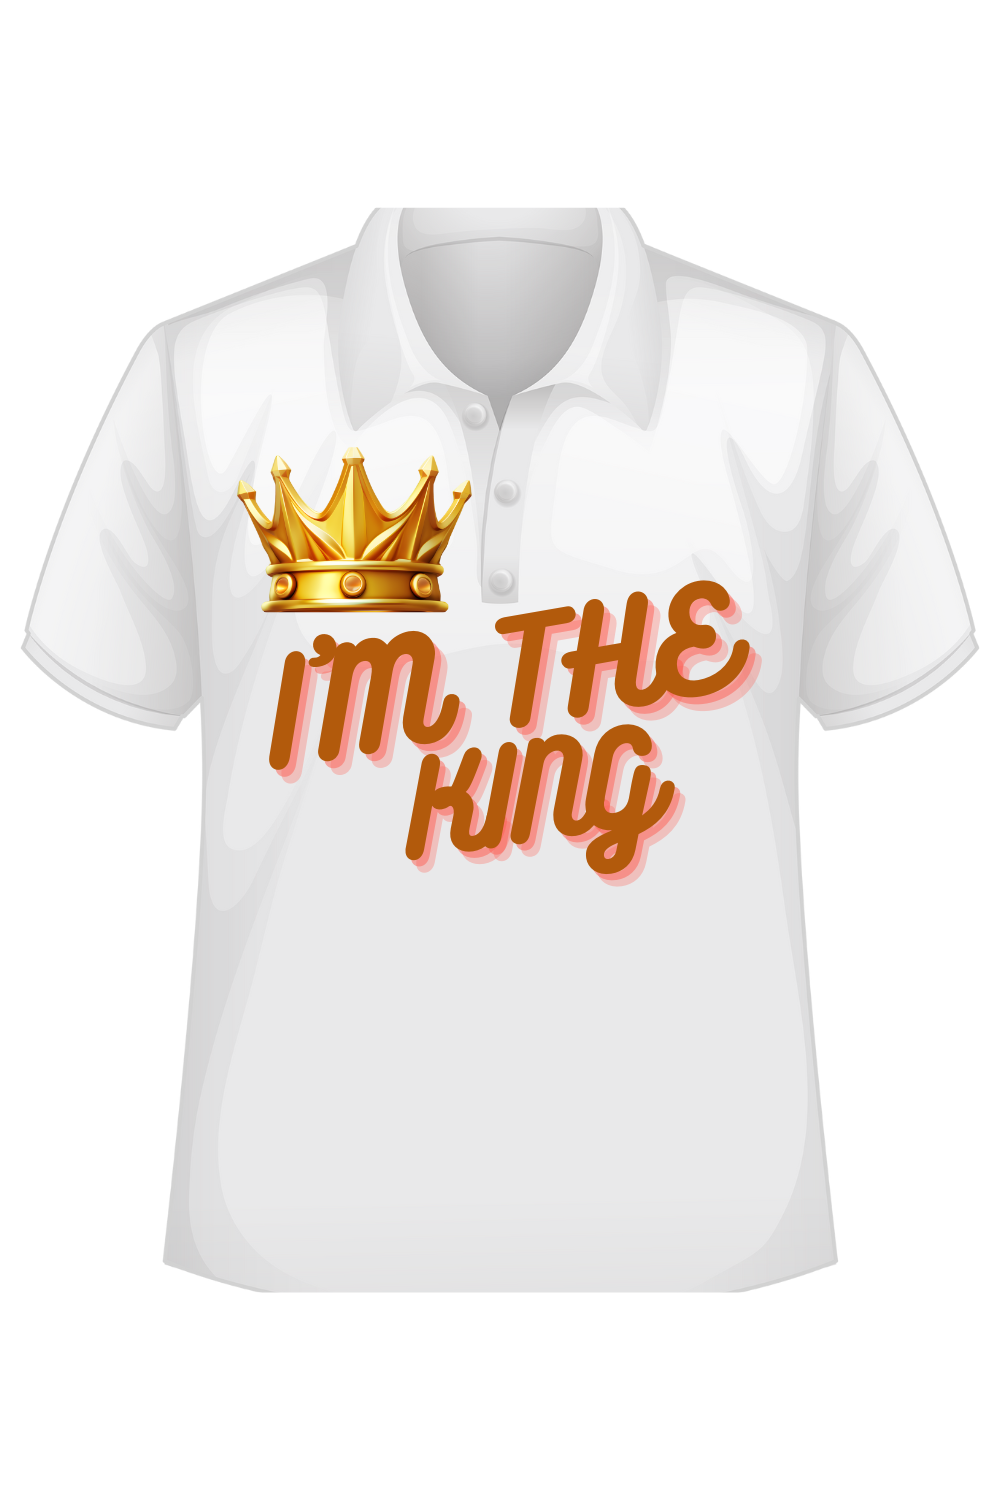 Royal Exquisite Emblem T-Shirts Design pinterest preview image.